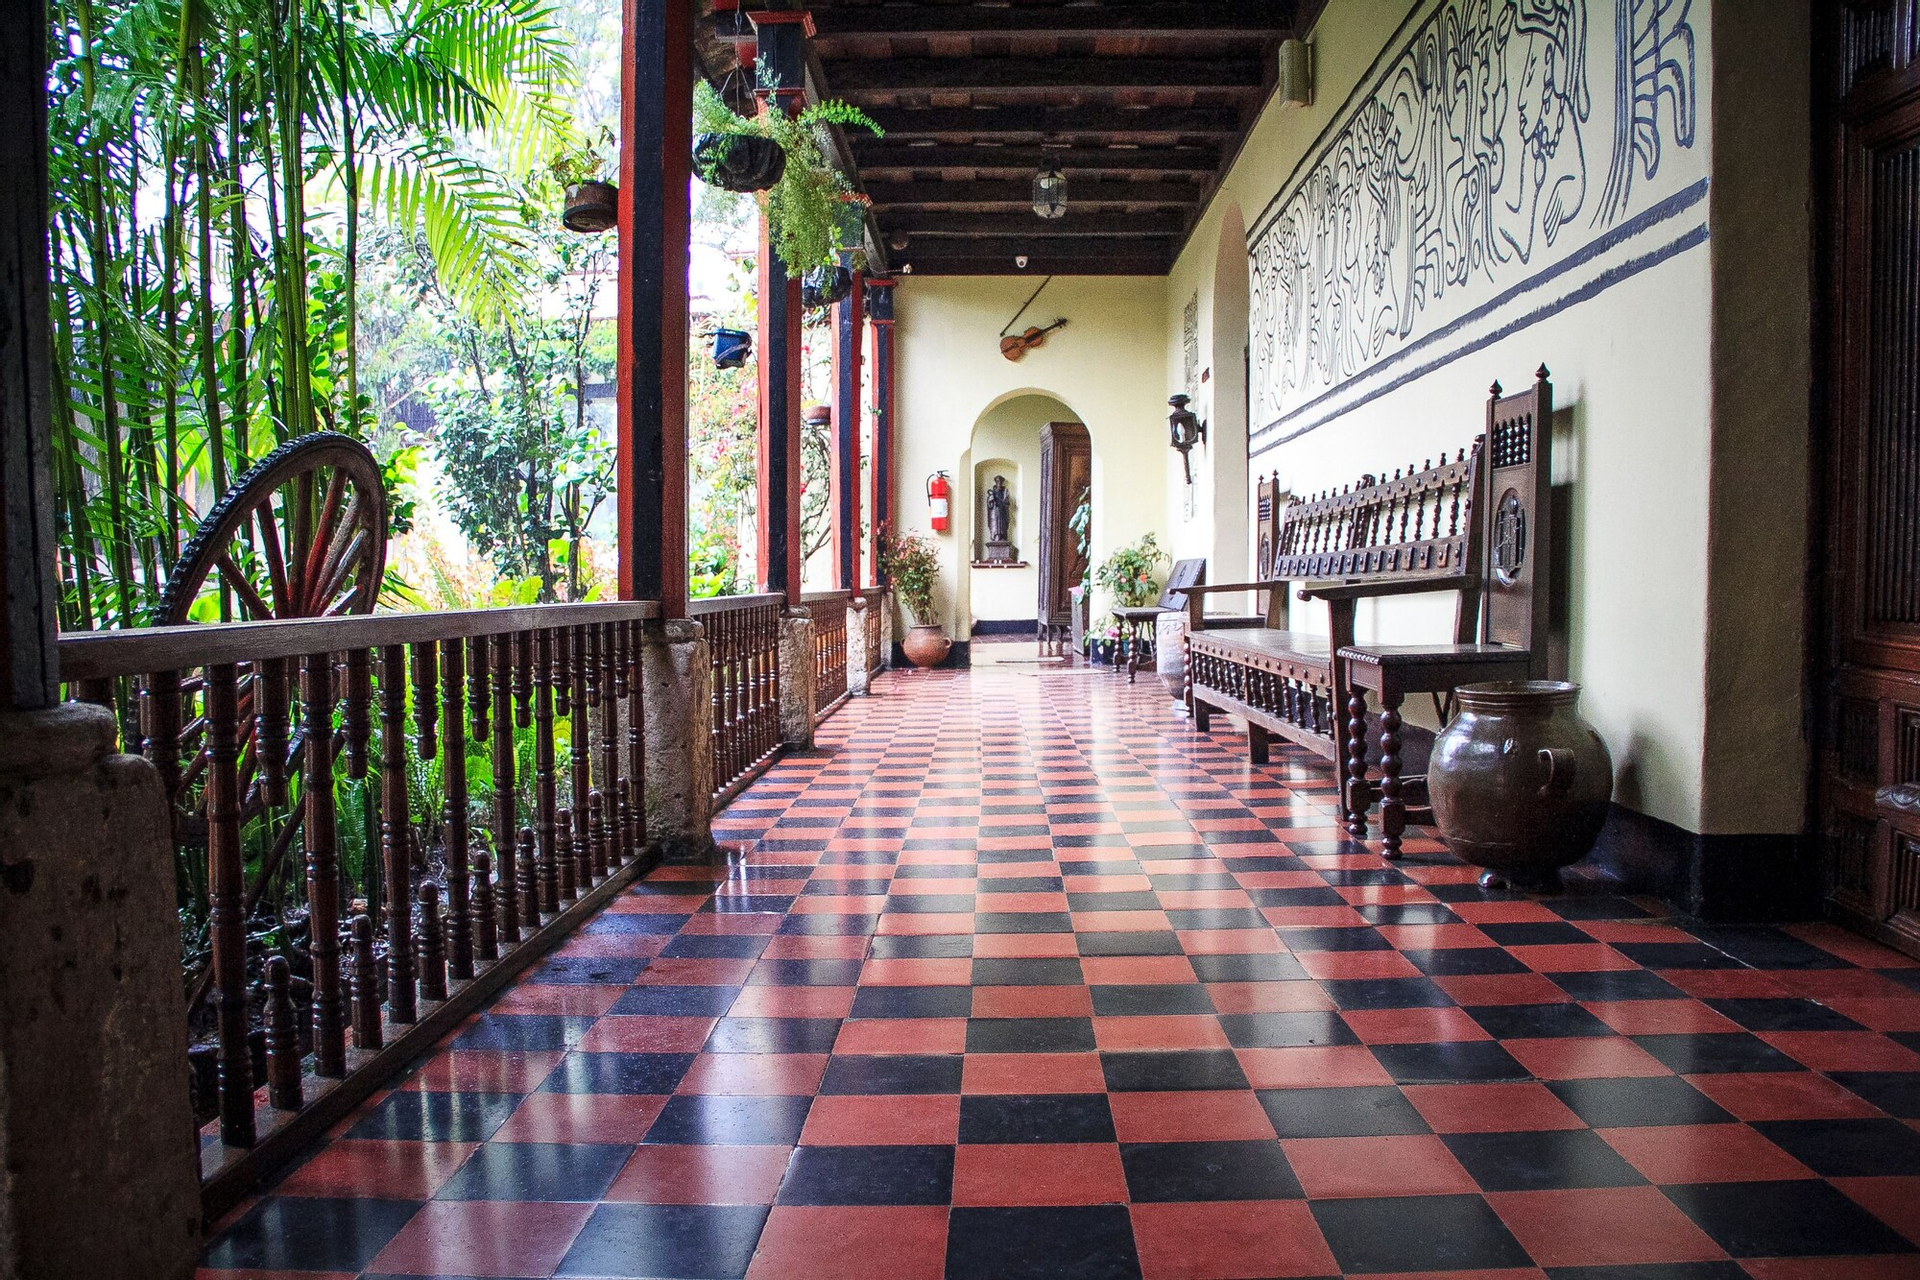 Others 5, Hotel Museo Mayan Inn de Guatemala, Chichicastenango